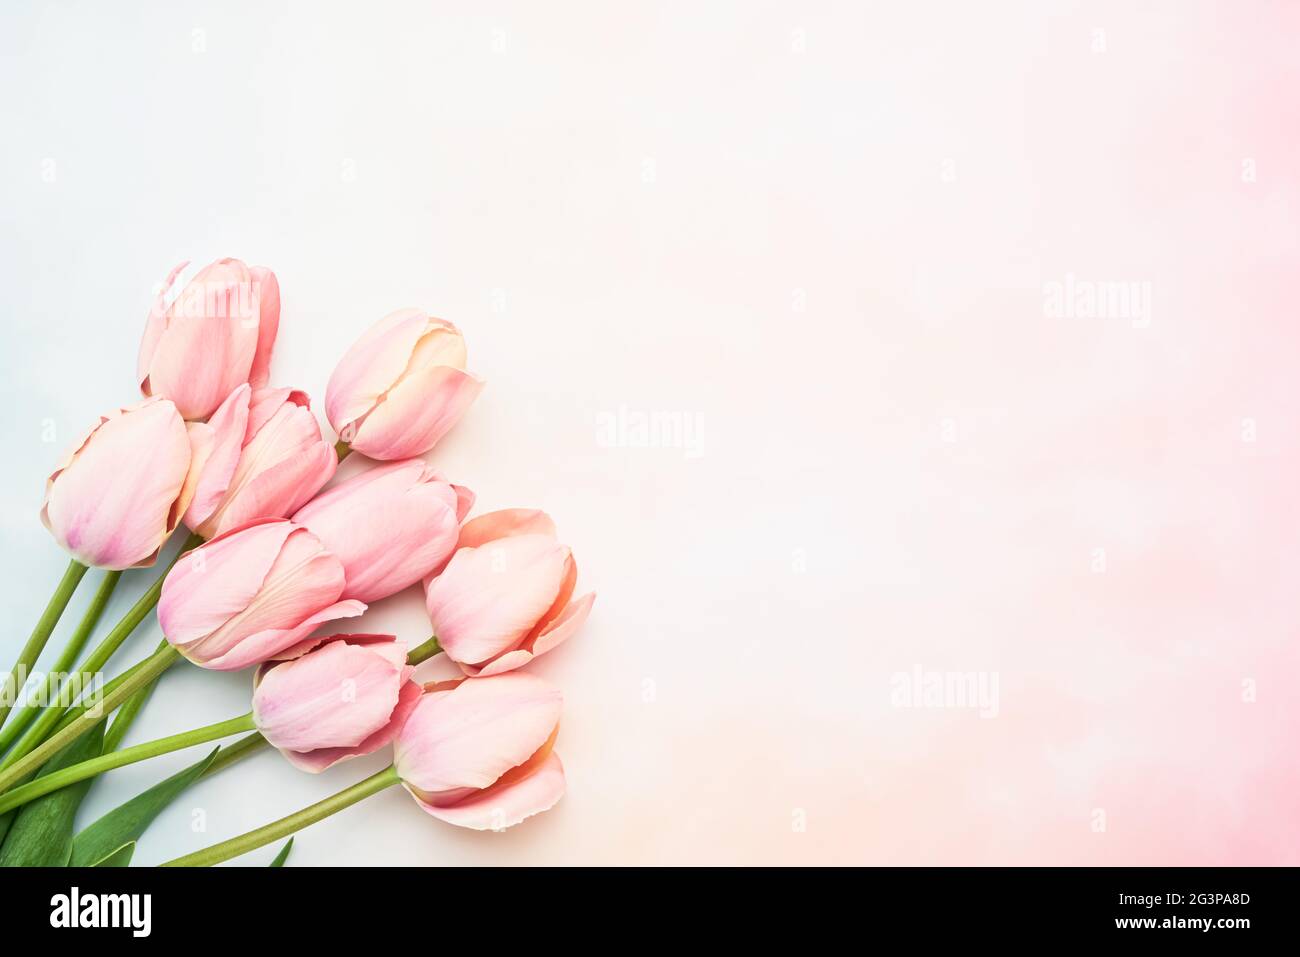 Rosa Tulpenblüten auf einem rosa-blauen Hintergrund, selektiver Fokus. Muttertag, Geburtstagsfeier Konzept. Flach liegend, Platz für Text kopieren Stockfoto